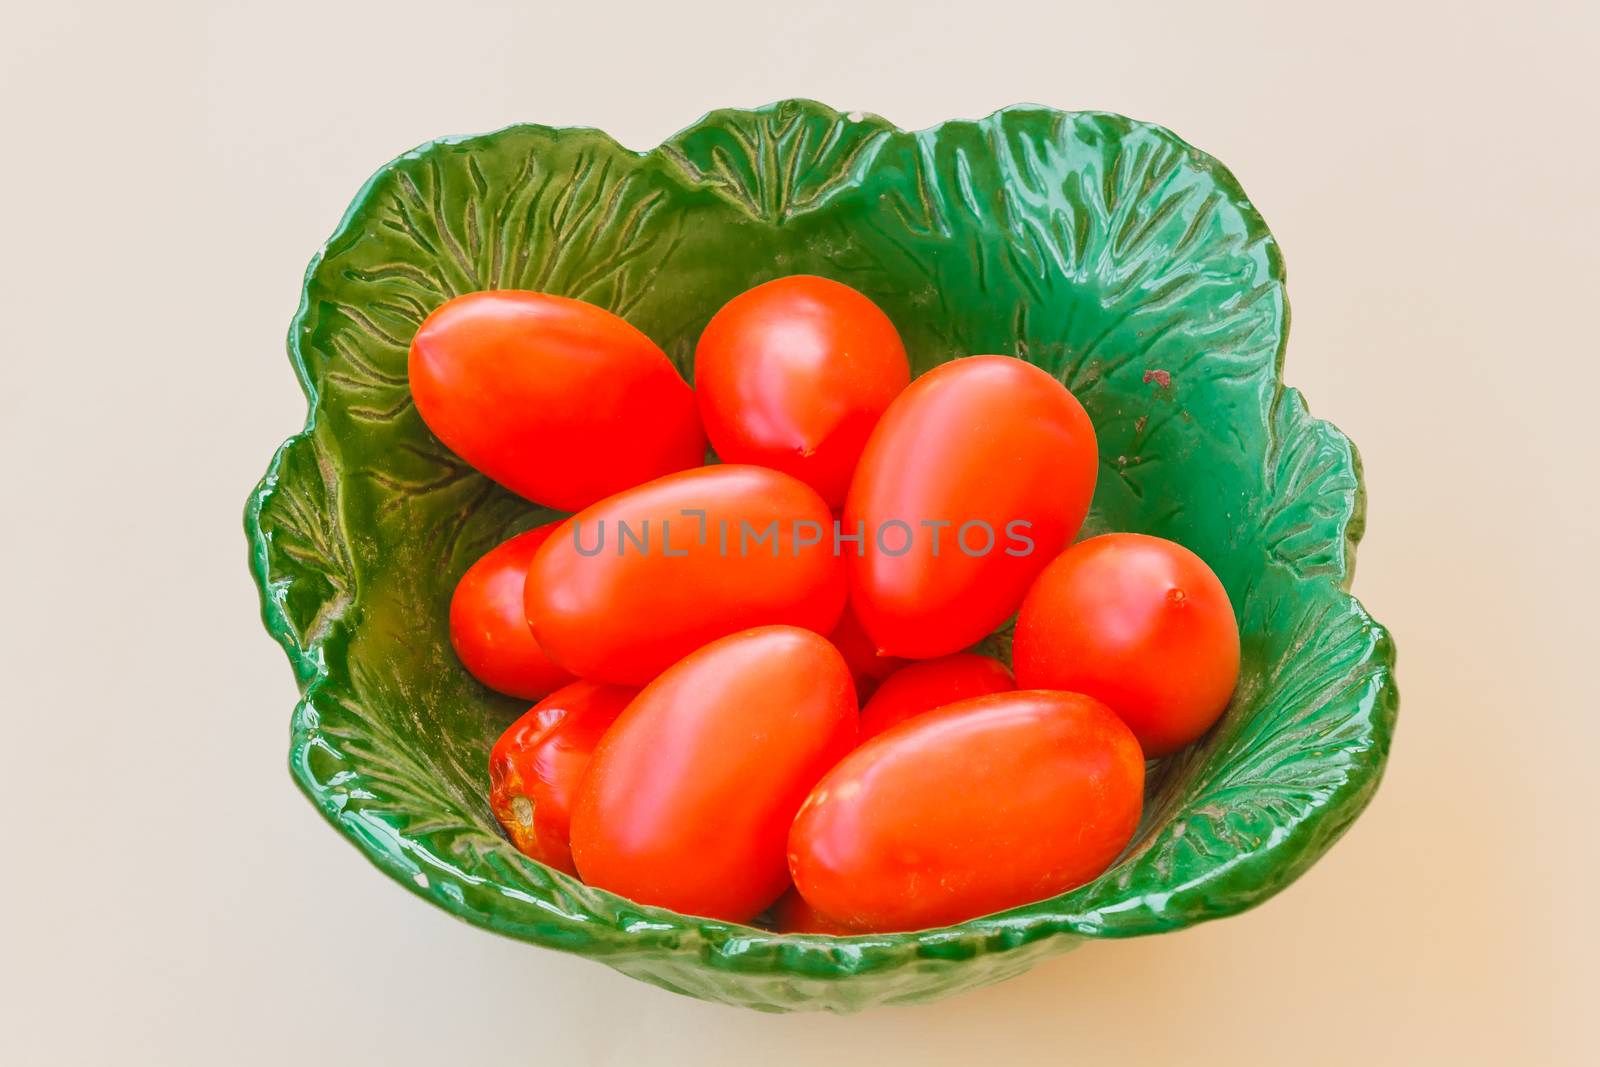 perini tomatoes by grancanaria